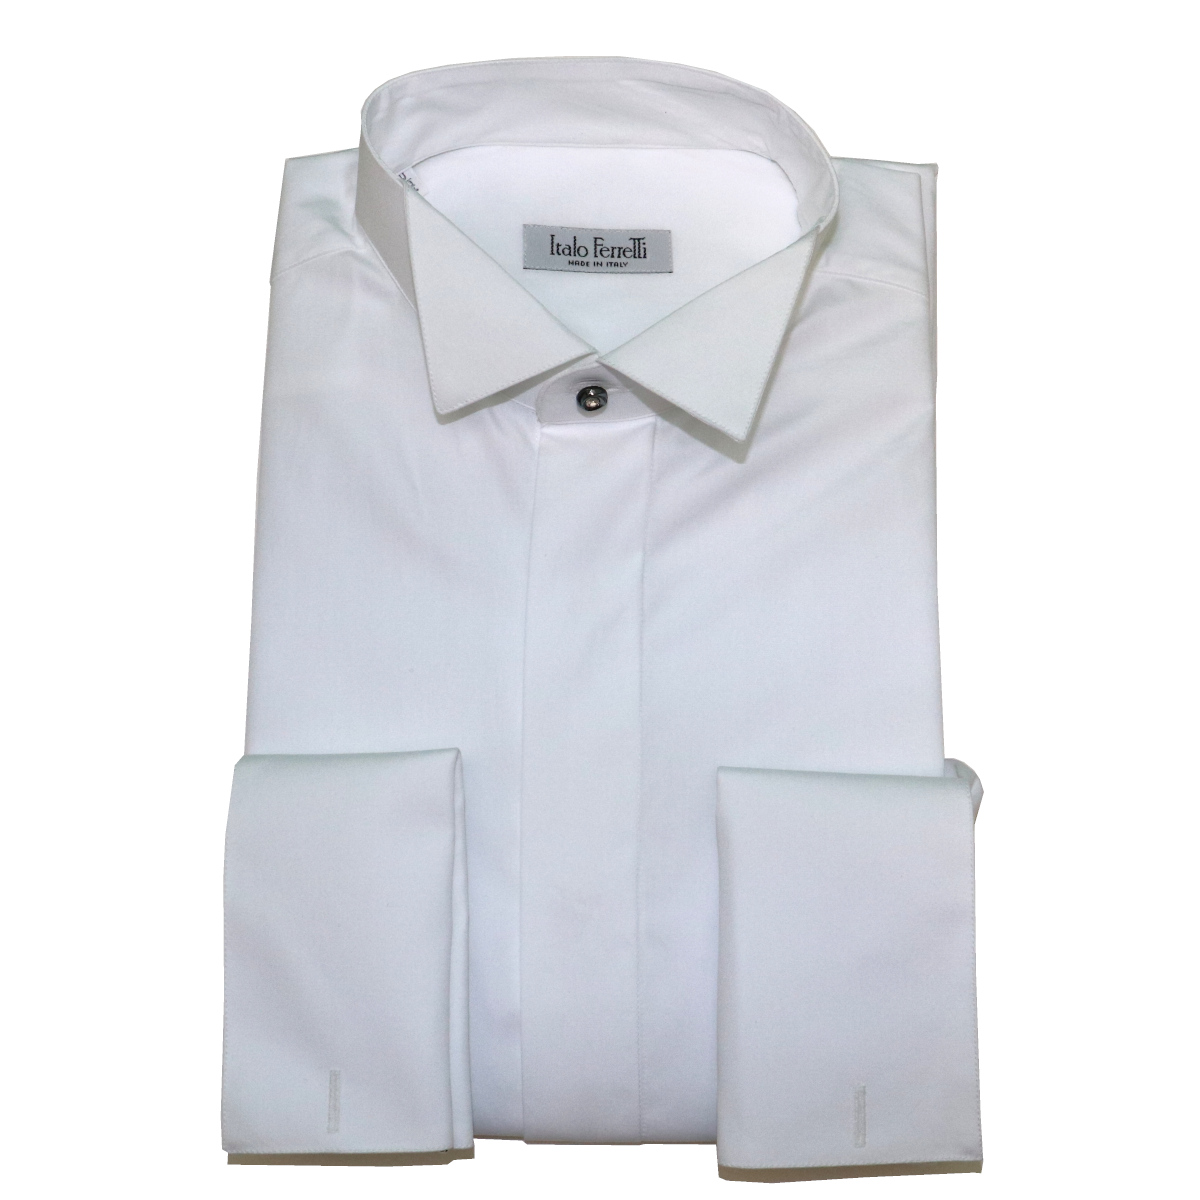 White smoking shirt, 100% cotton, Swarovski button - Italo Ferretti ...